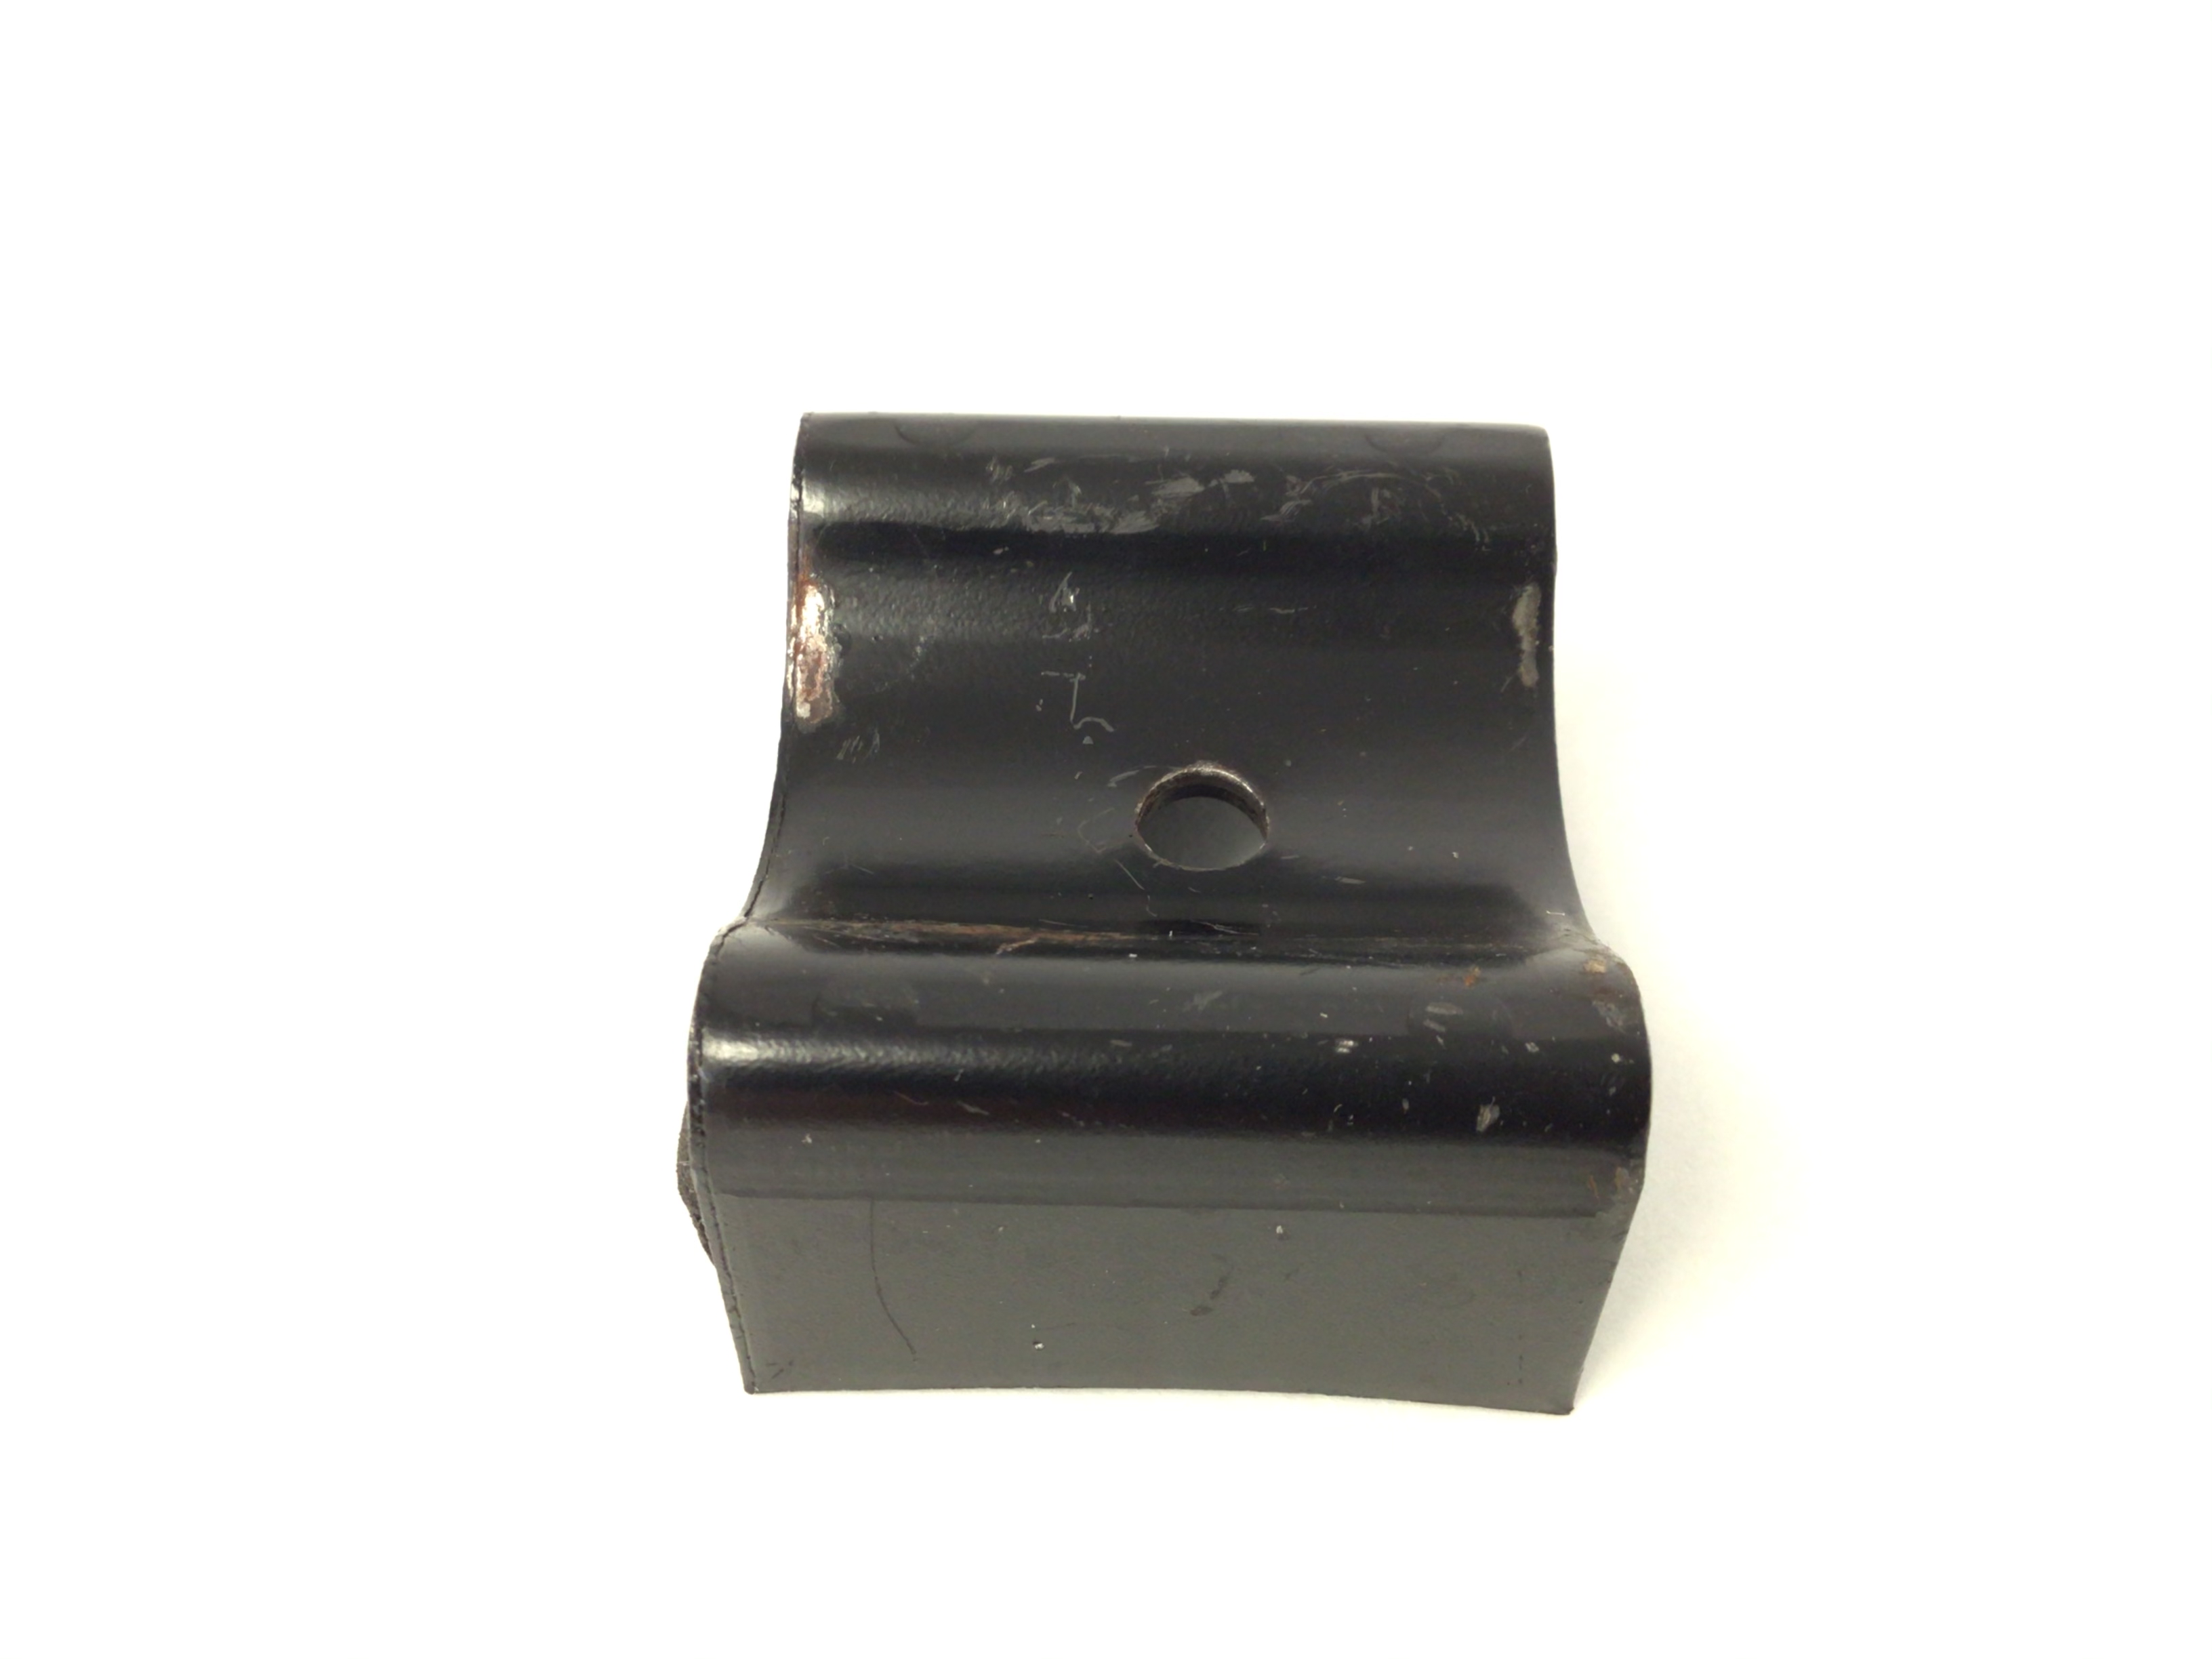 Handrail Side rail mounting bracket w/foam (Used)